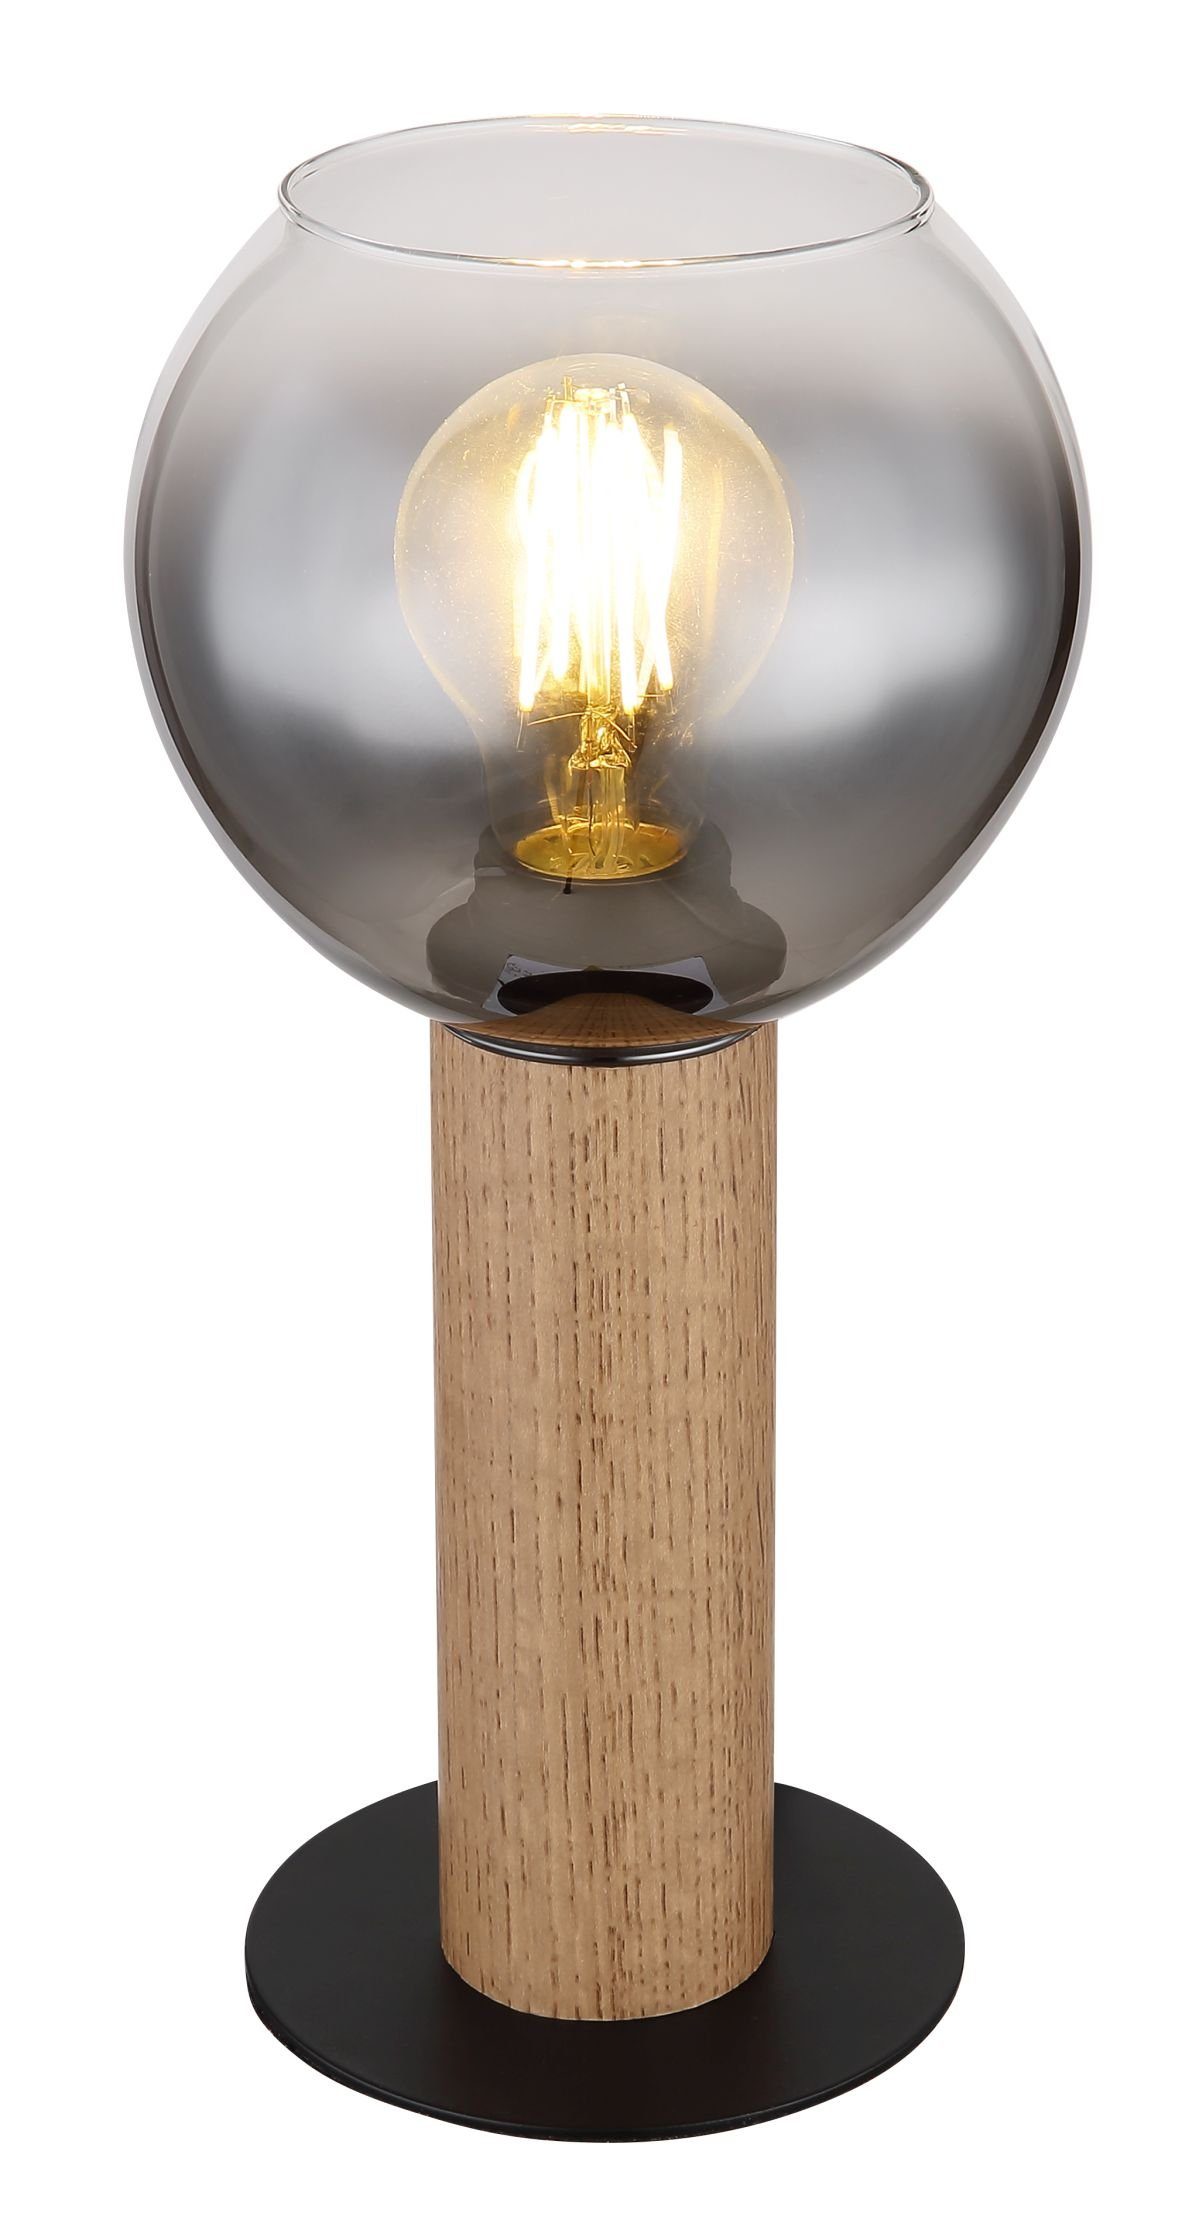 Wohnzimmer GLOBO LEUCHTEN GLOBO Tischleuchte Tischleuchte Globo Nachttischlampe Tischlampe Holz Glas